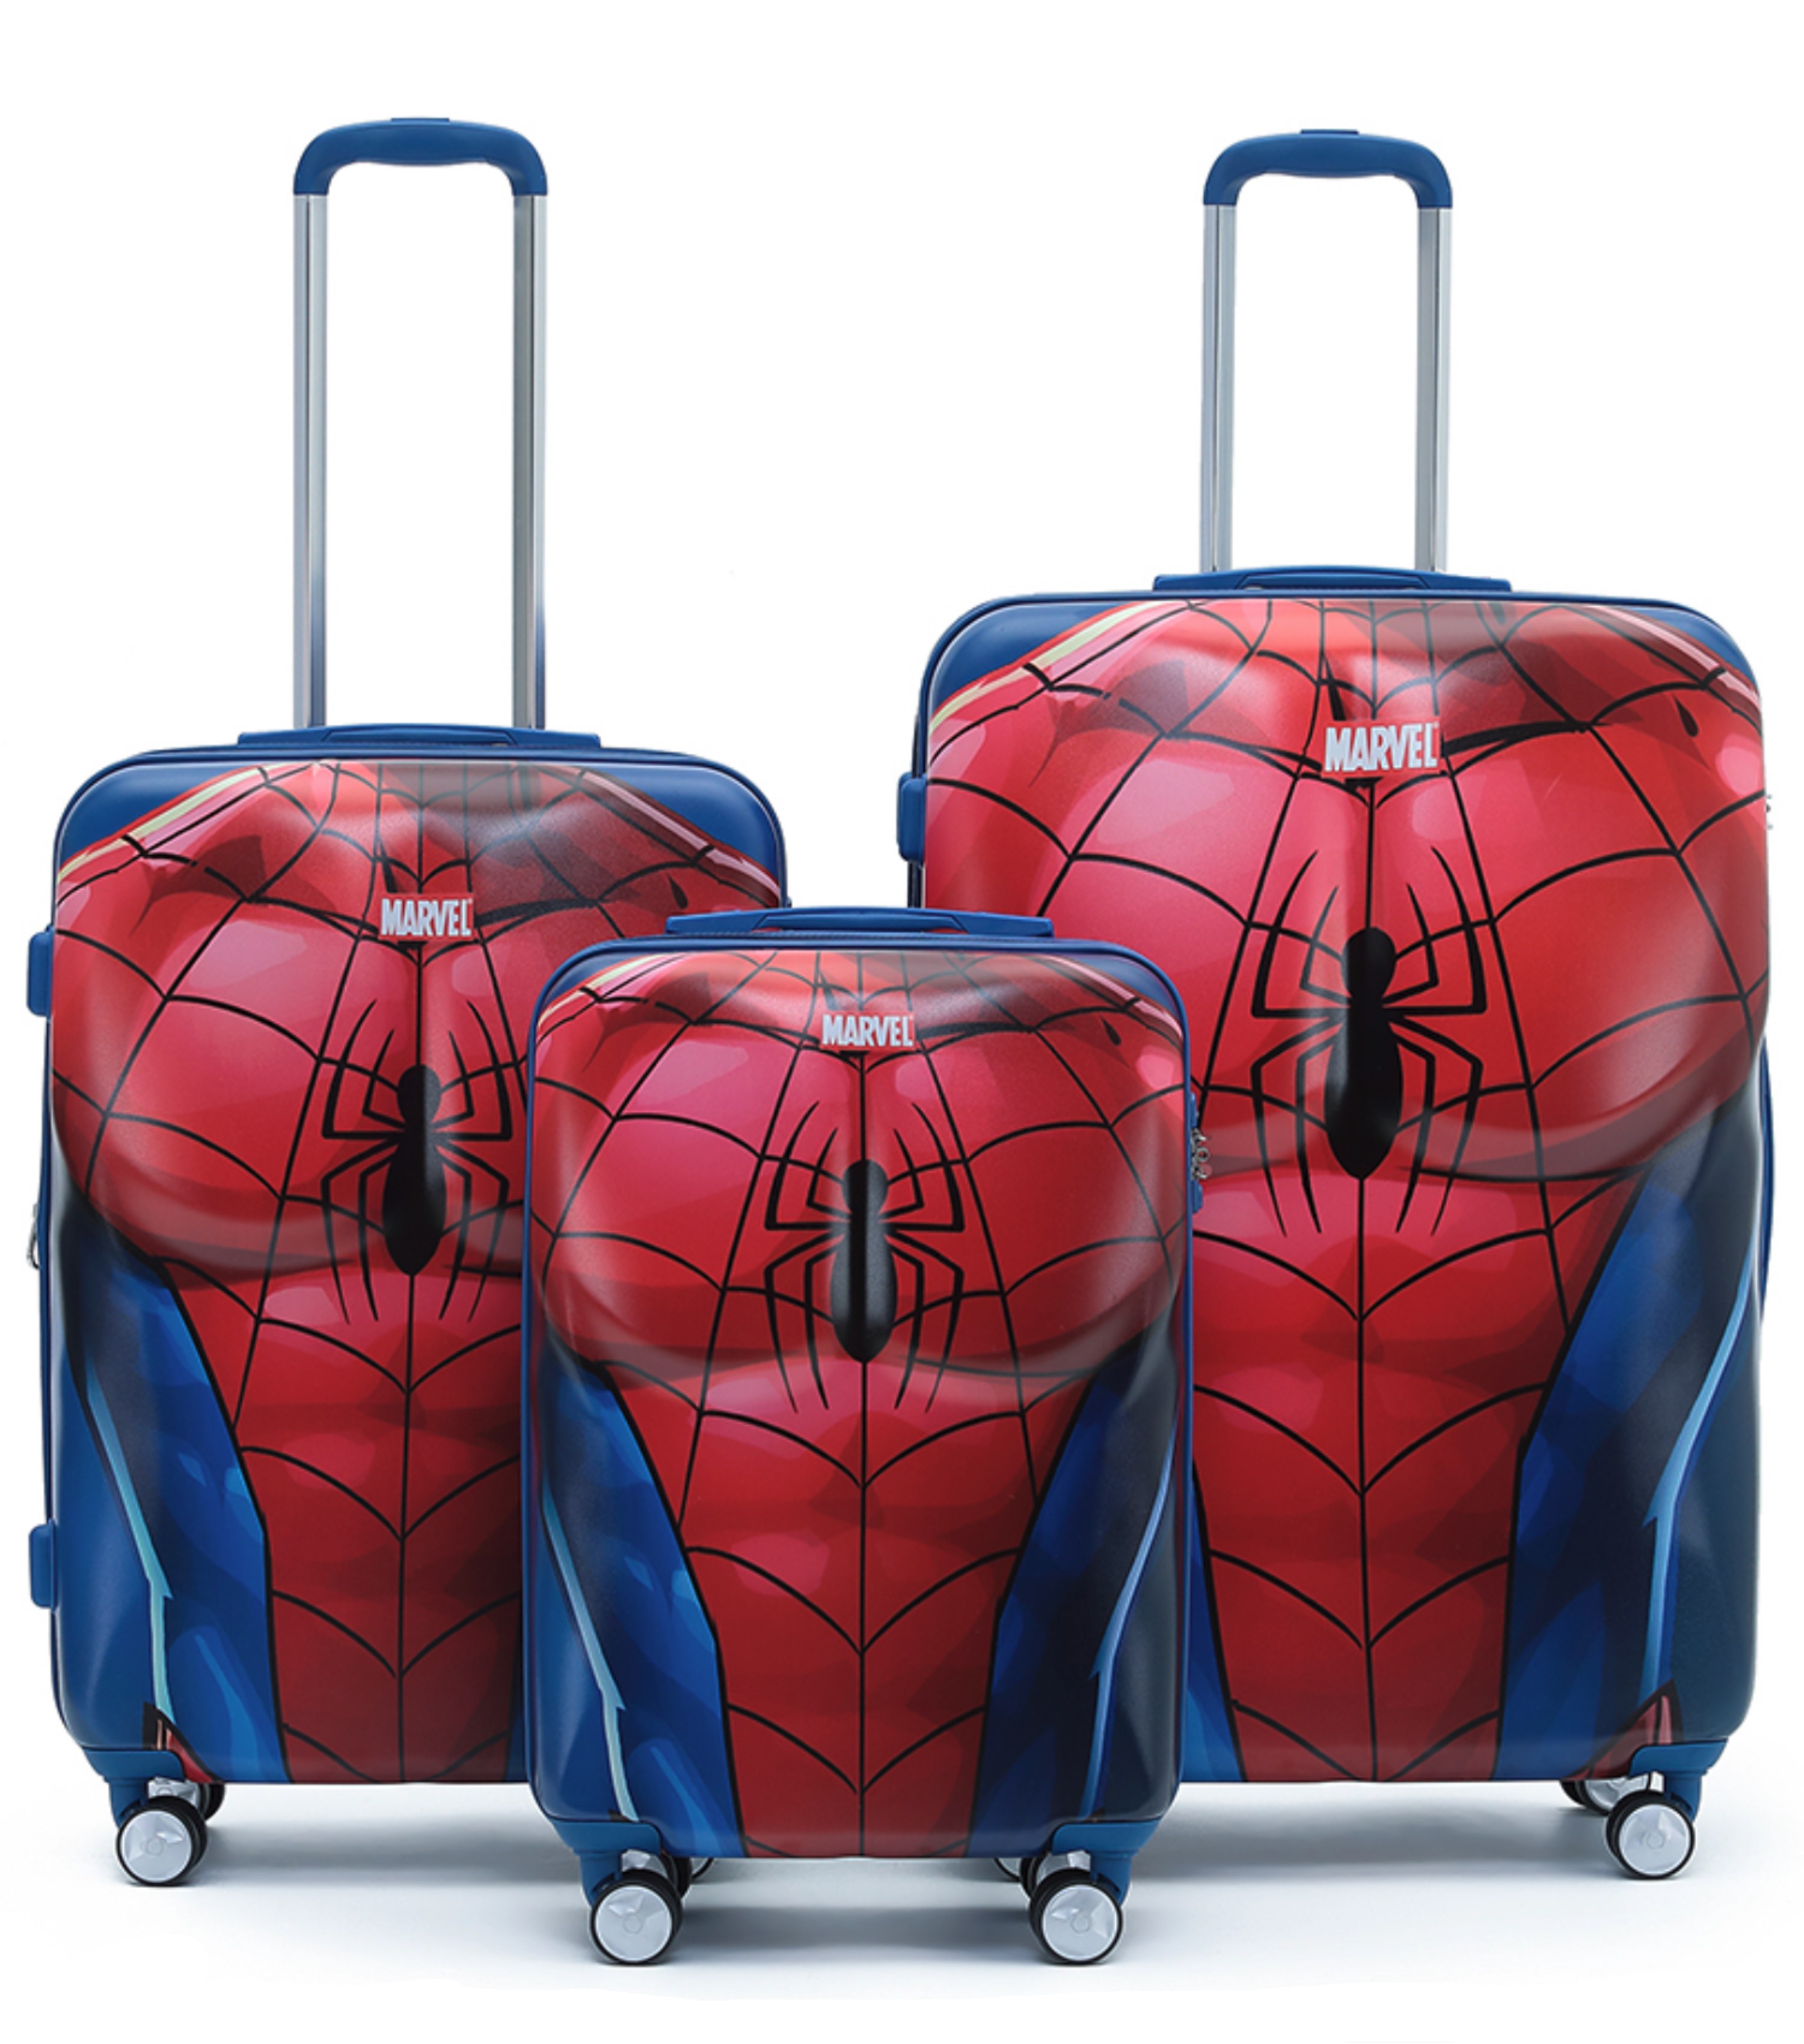 Marvel Spiderman Chest Print 4-Wheel Spinner Case - Set of 3